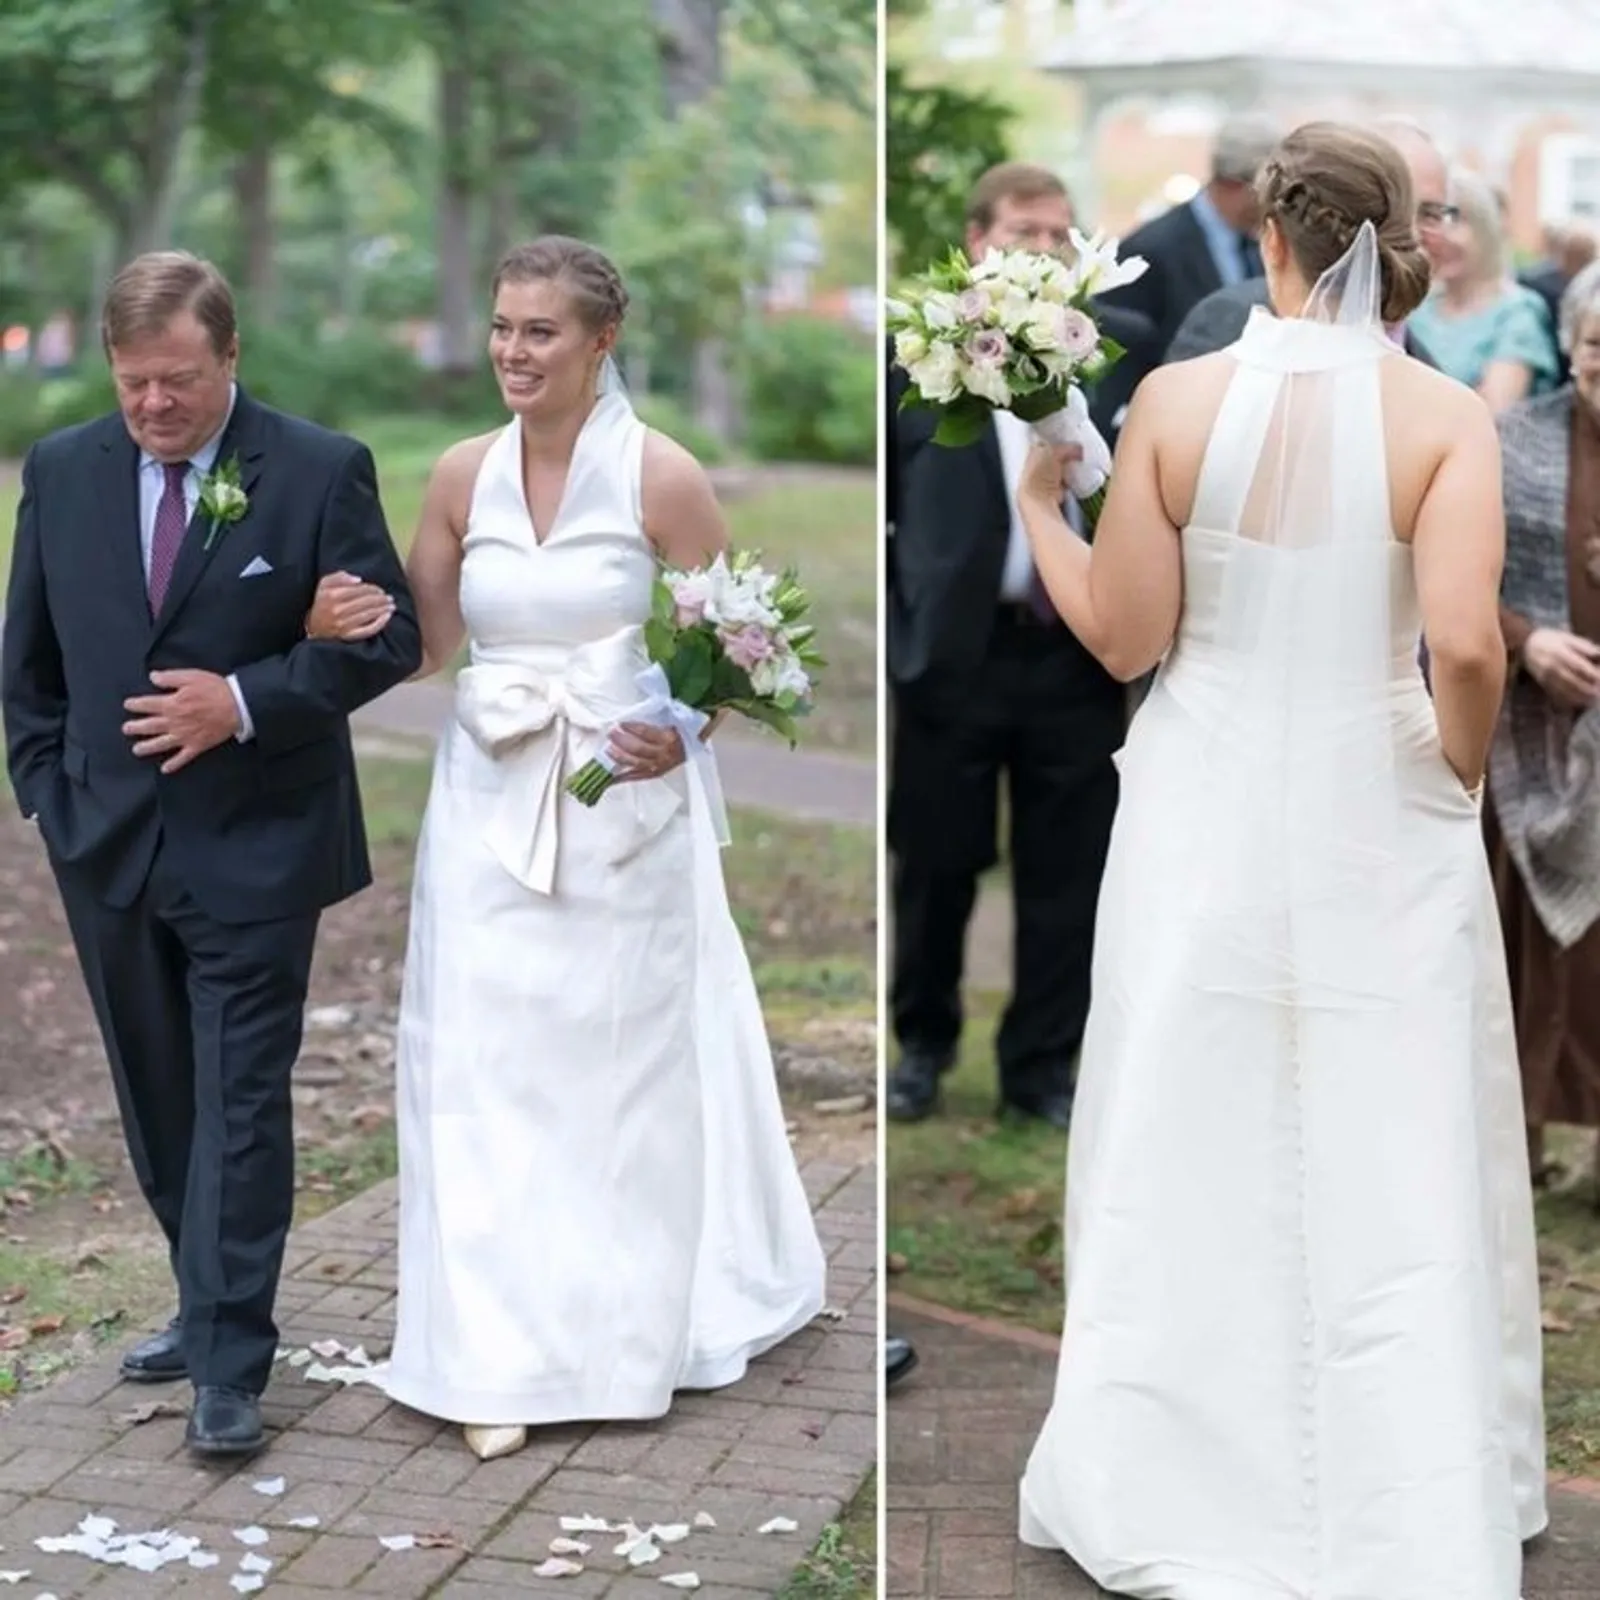 9 Foto Lucu Ini Ungkap Sisi Lain Saat Pernikahan, Bisa Jadi Inspirasi!